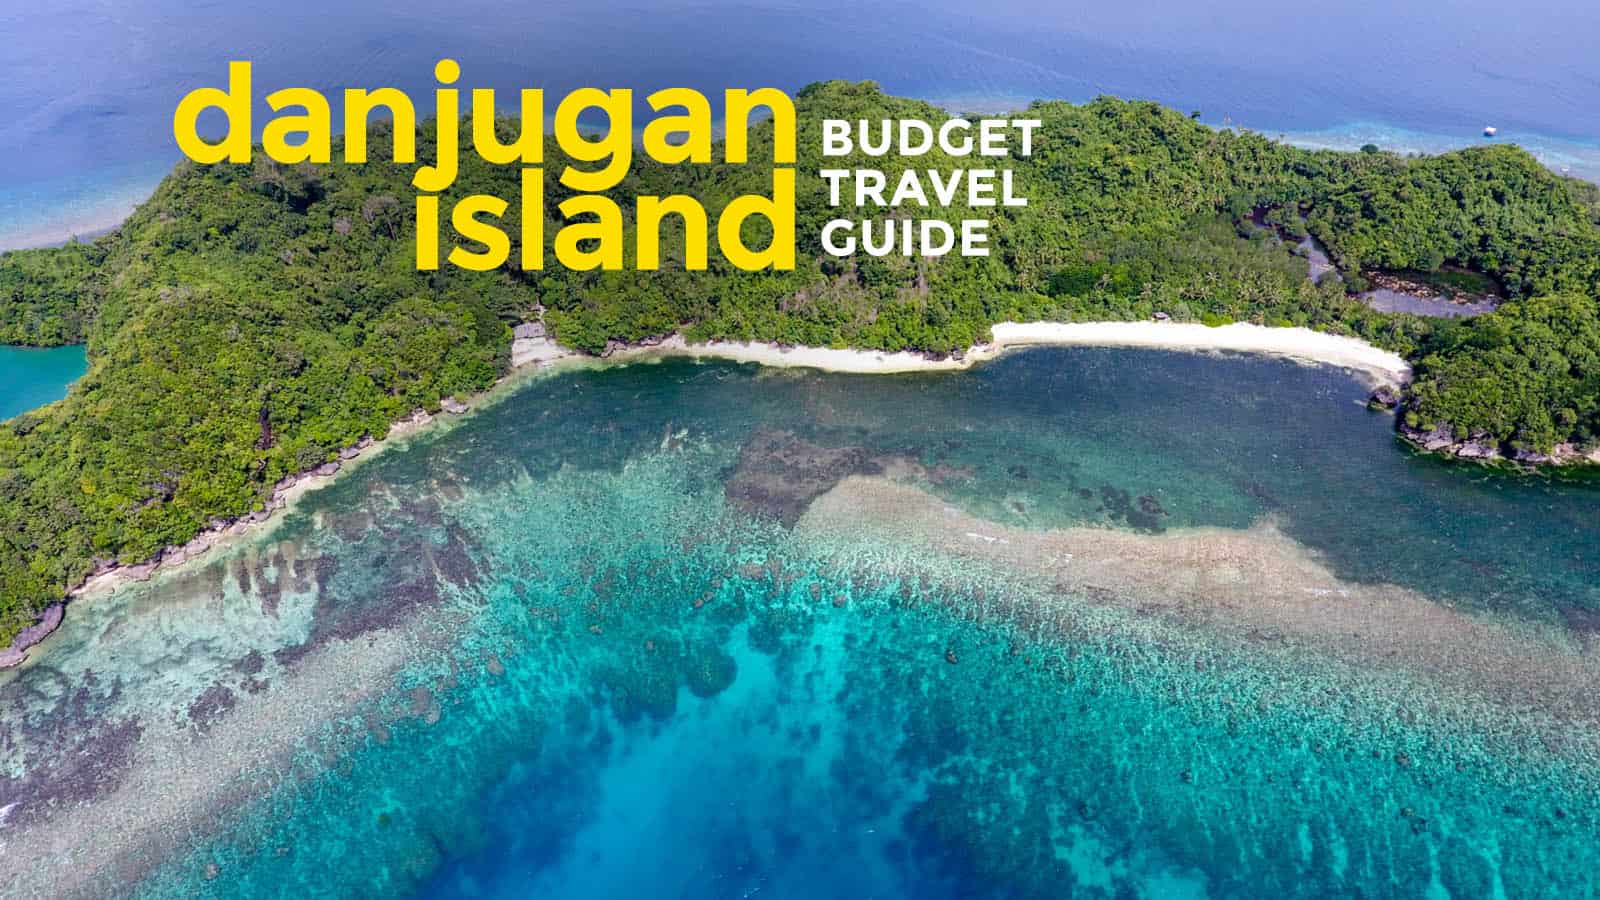 穷游丹jugan岛:旅游指南和行程